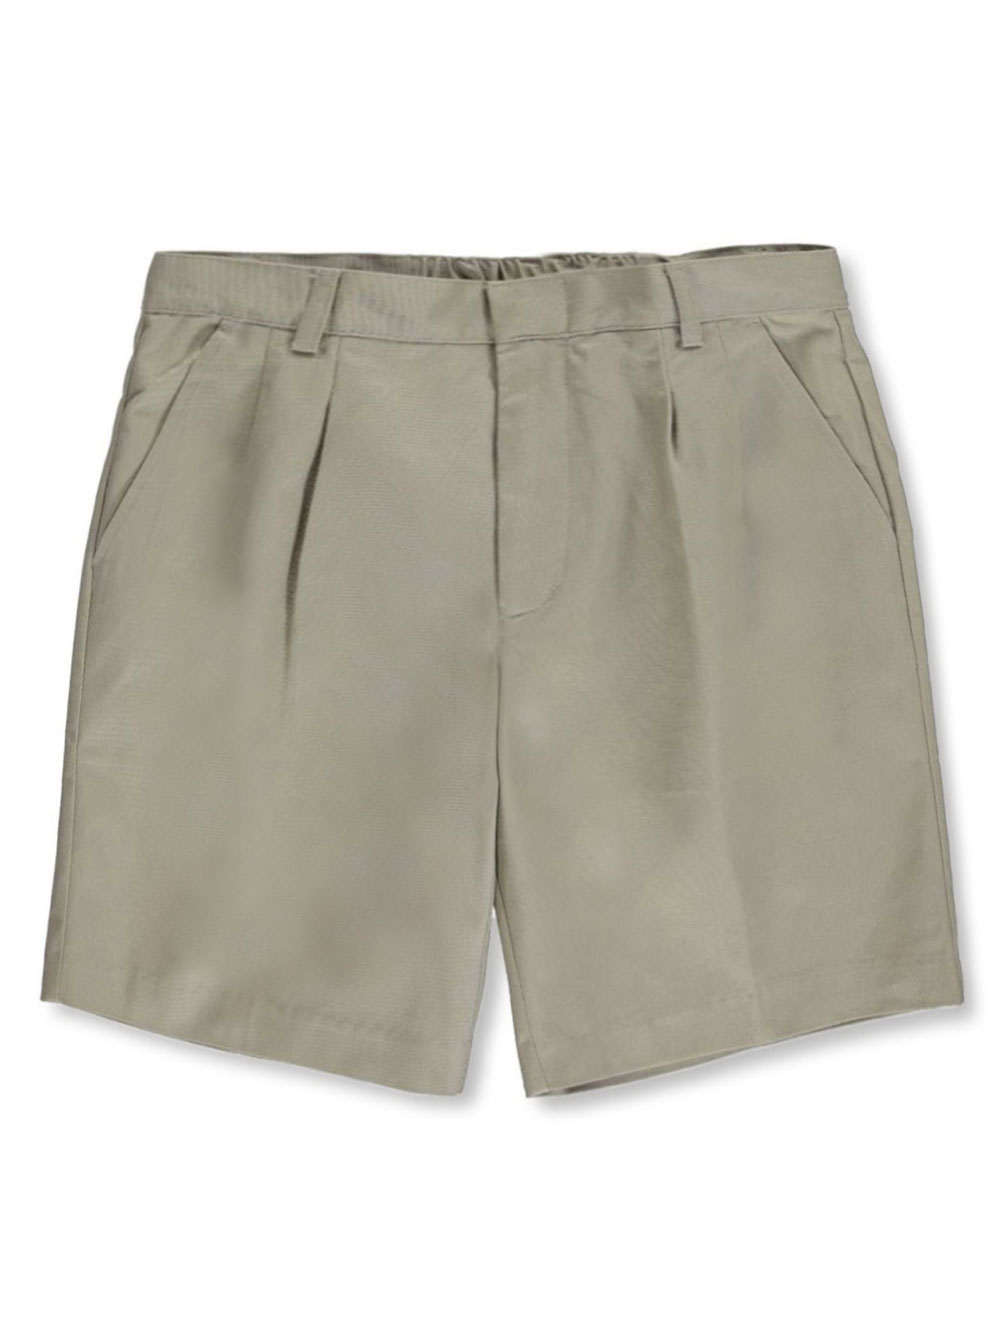 Basic Unisex Pleated Shorts